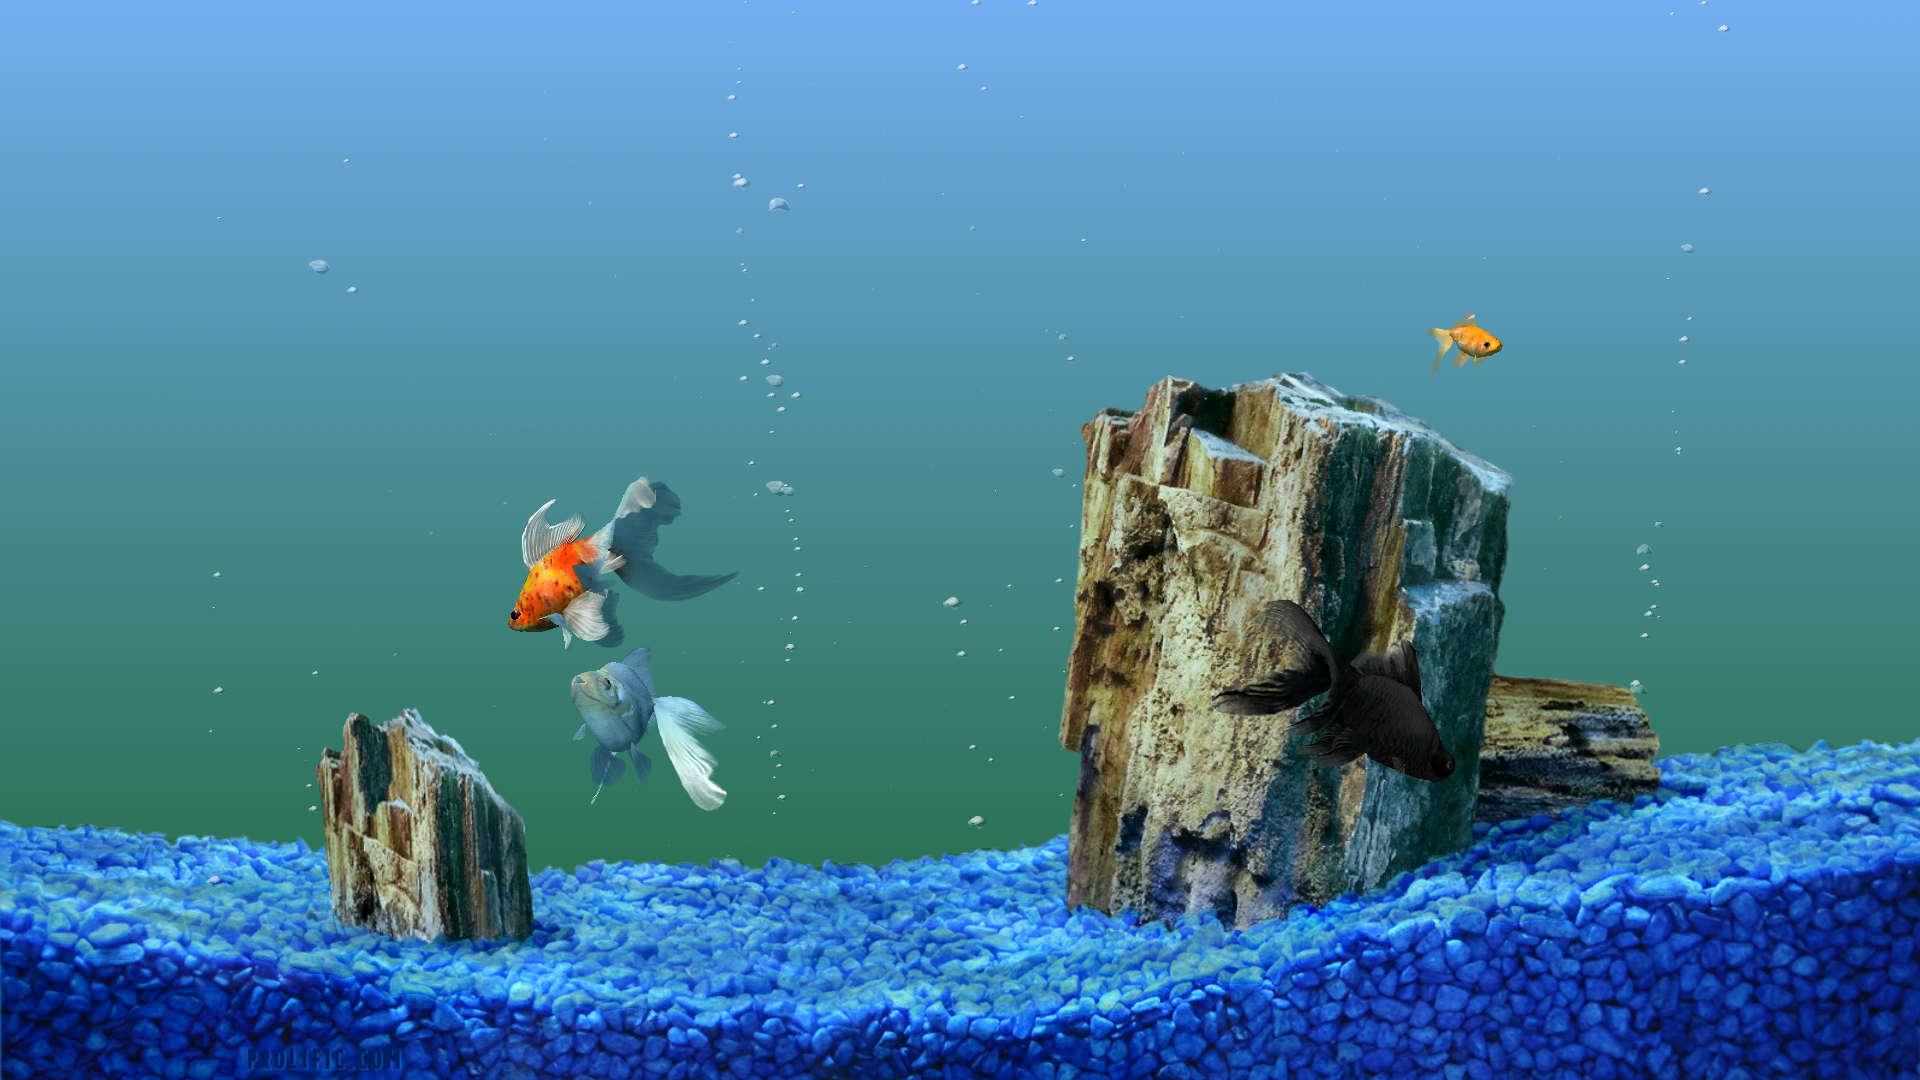 Desktop Backgrounds Fish Tank Moving Photo - Desktop Wallpaper Hd Aquarium  - 1920x1080 Wallpaper 